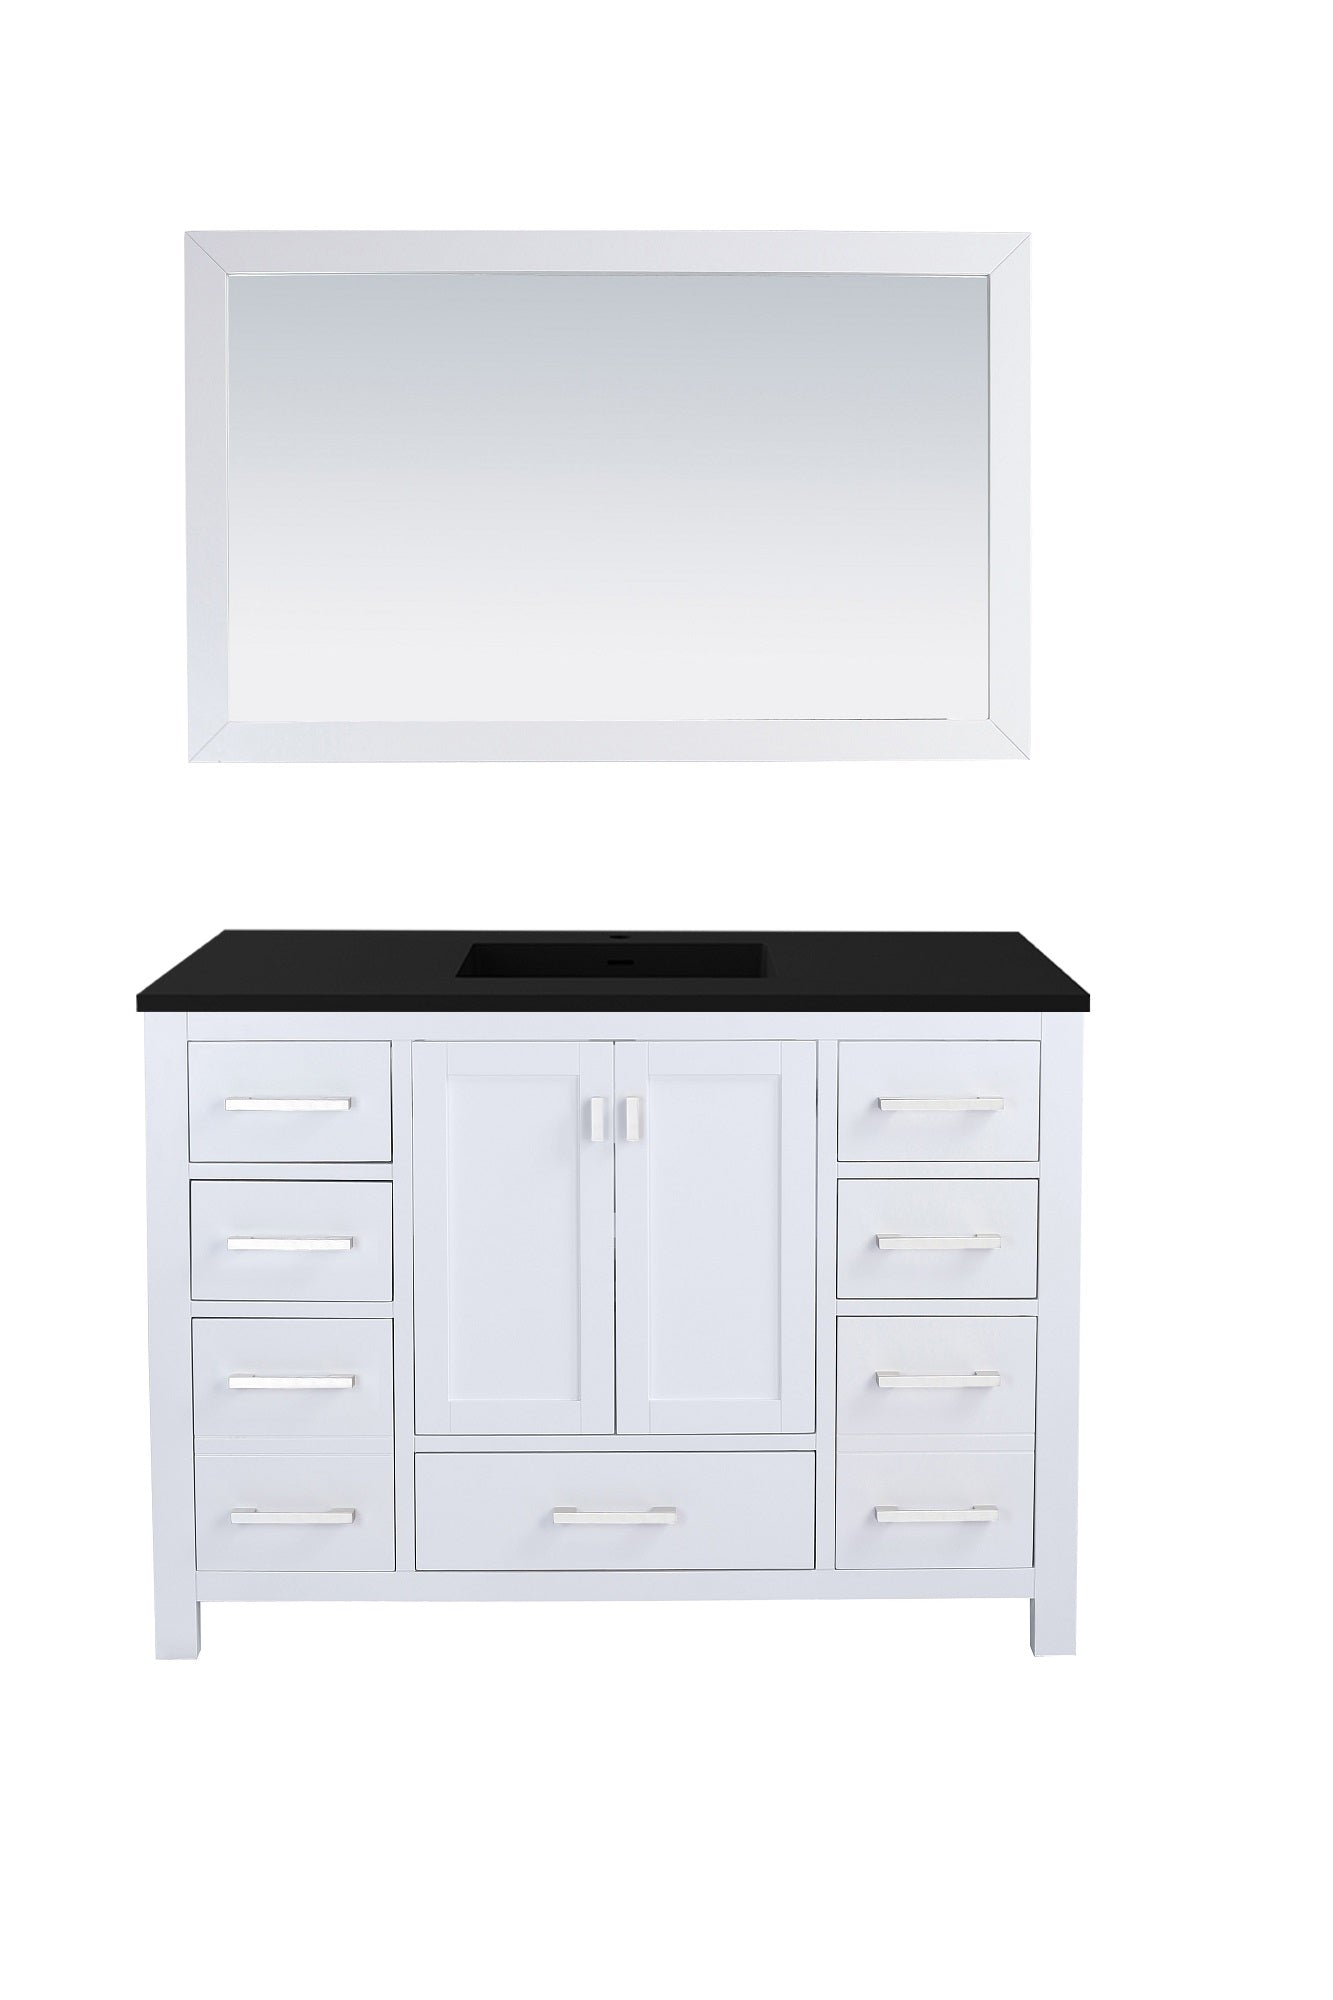 Wilson 48 - Cabinet with VIVA Stone Solid Surface Countertop - Luxe Bathroom Vanities Luxury Bathroom Fixtures Bathroom Furniture